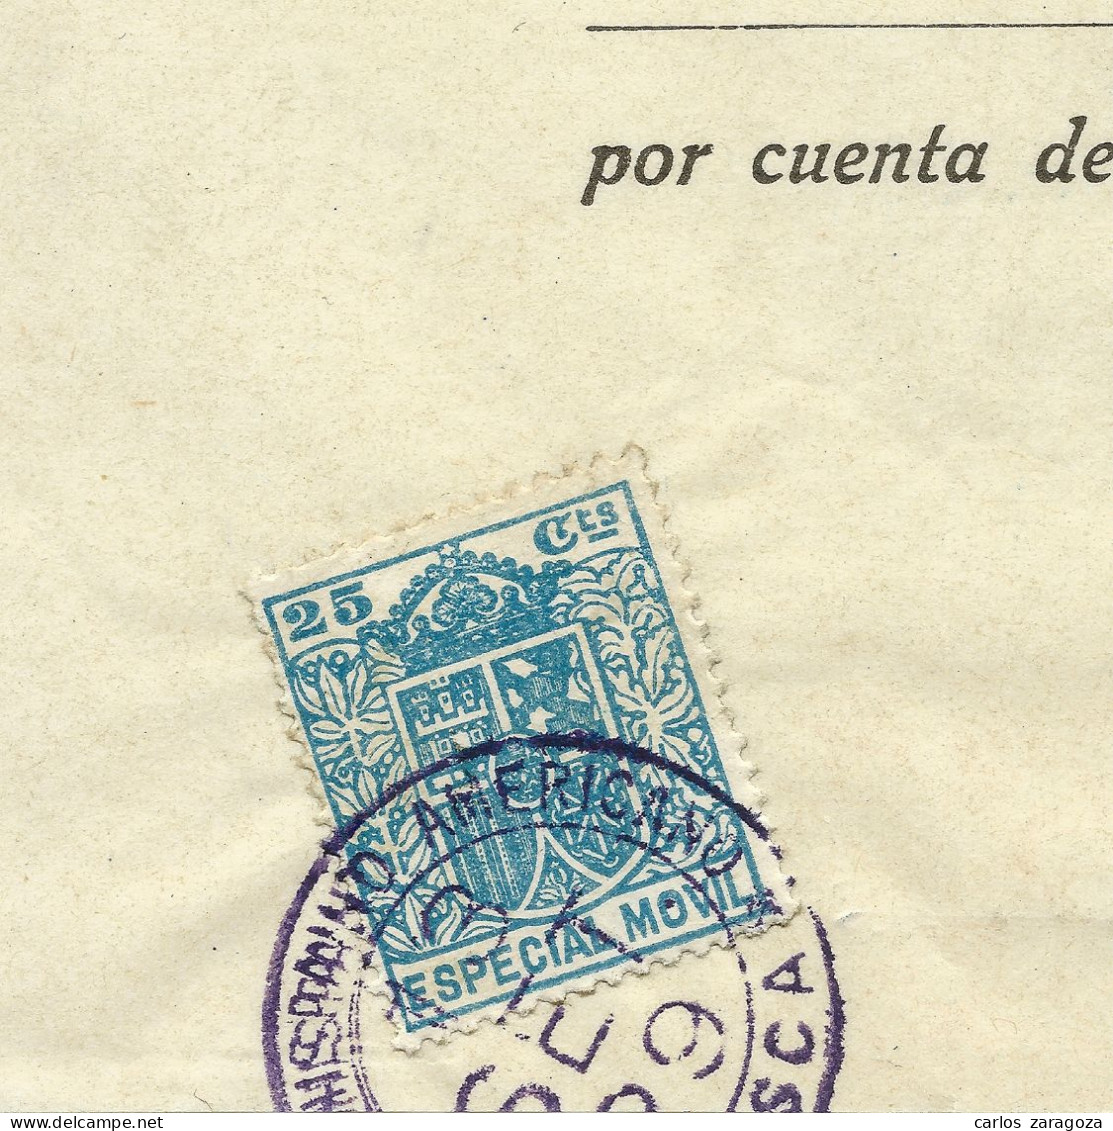 1922 BANCO HISPANO AMERICANO — Antiguo Documento Bancario — Timbre Fiscal ESPECIAL MOVIL - Fiscales